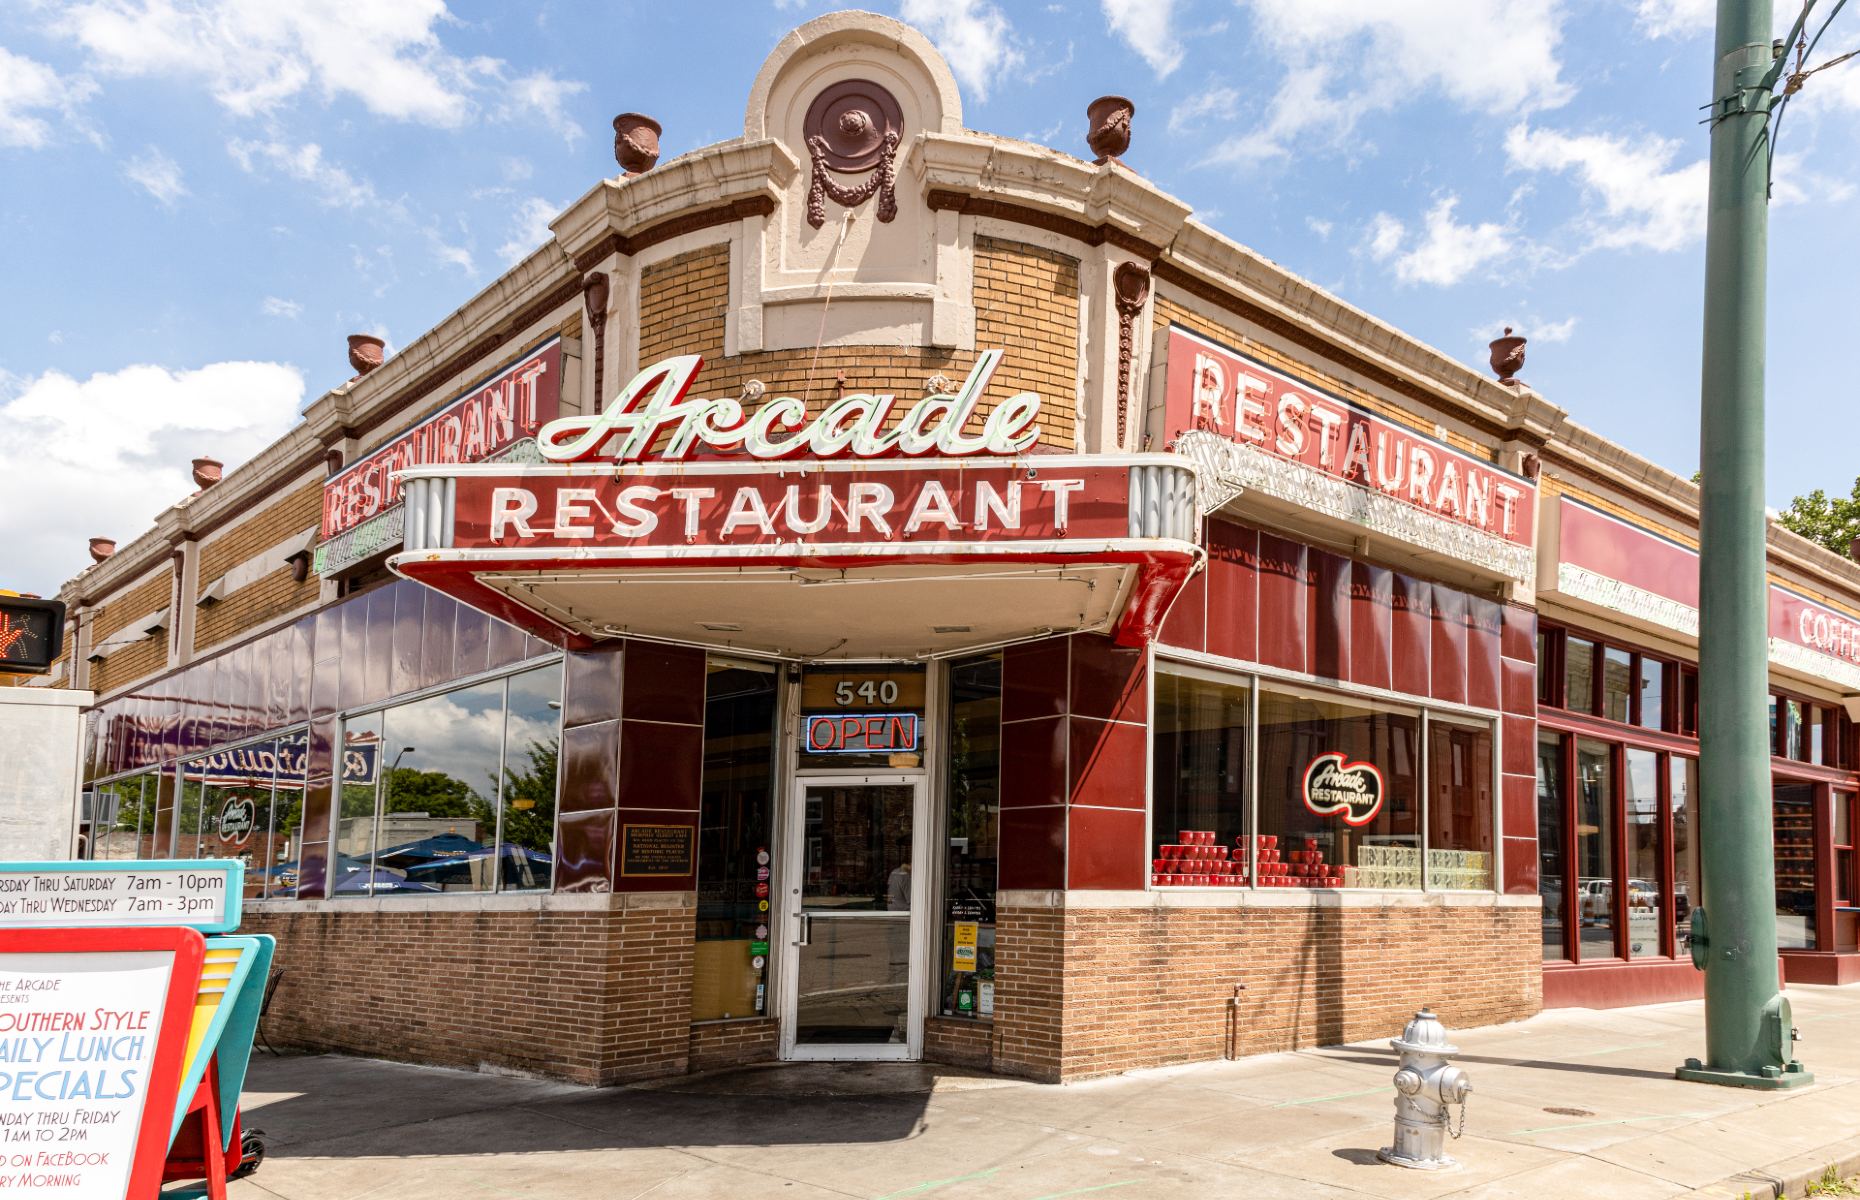 Arcade Restaurant Memphis (Image: jdpphoto/Shutterstock)